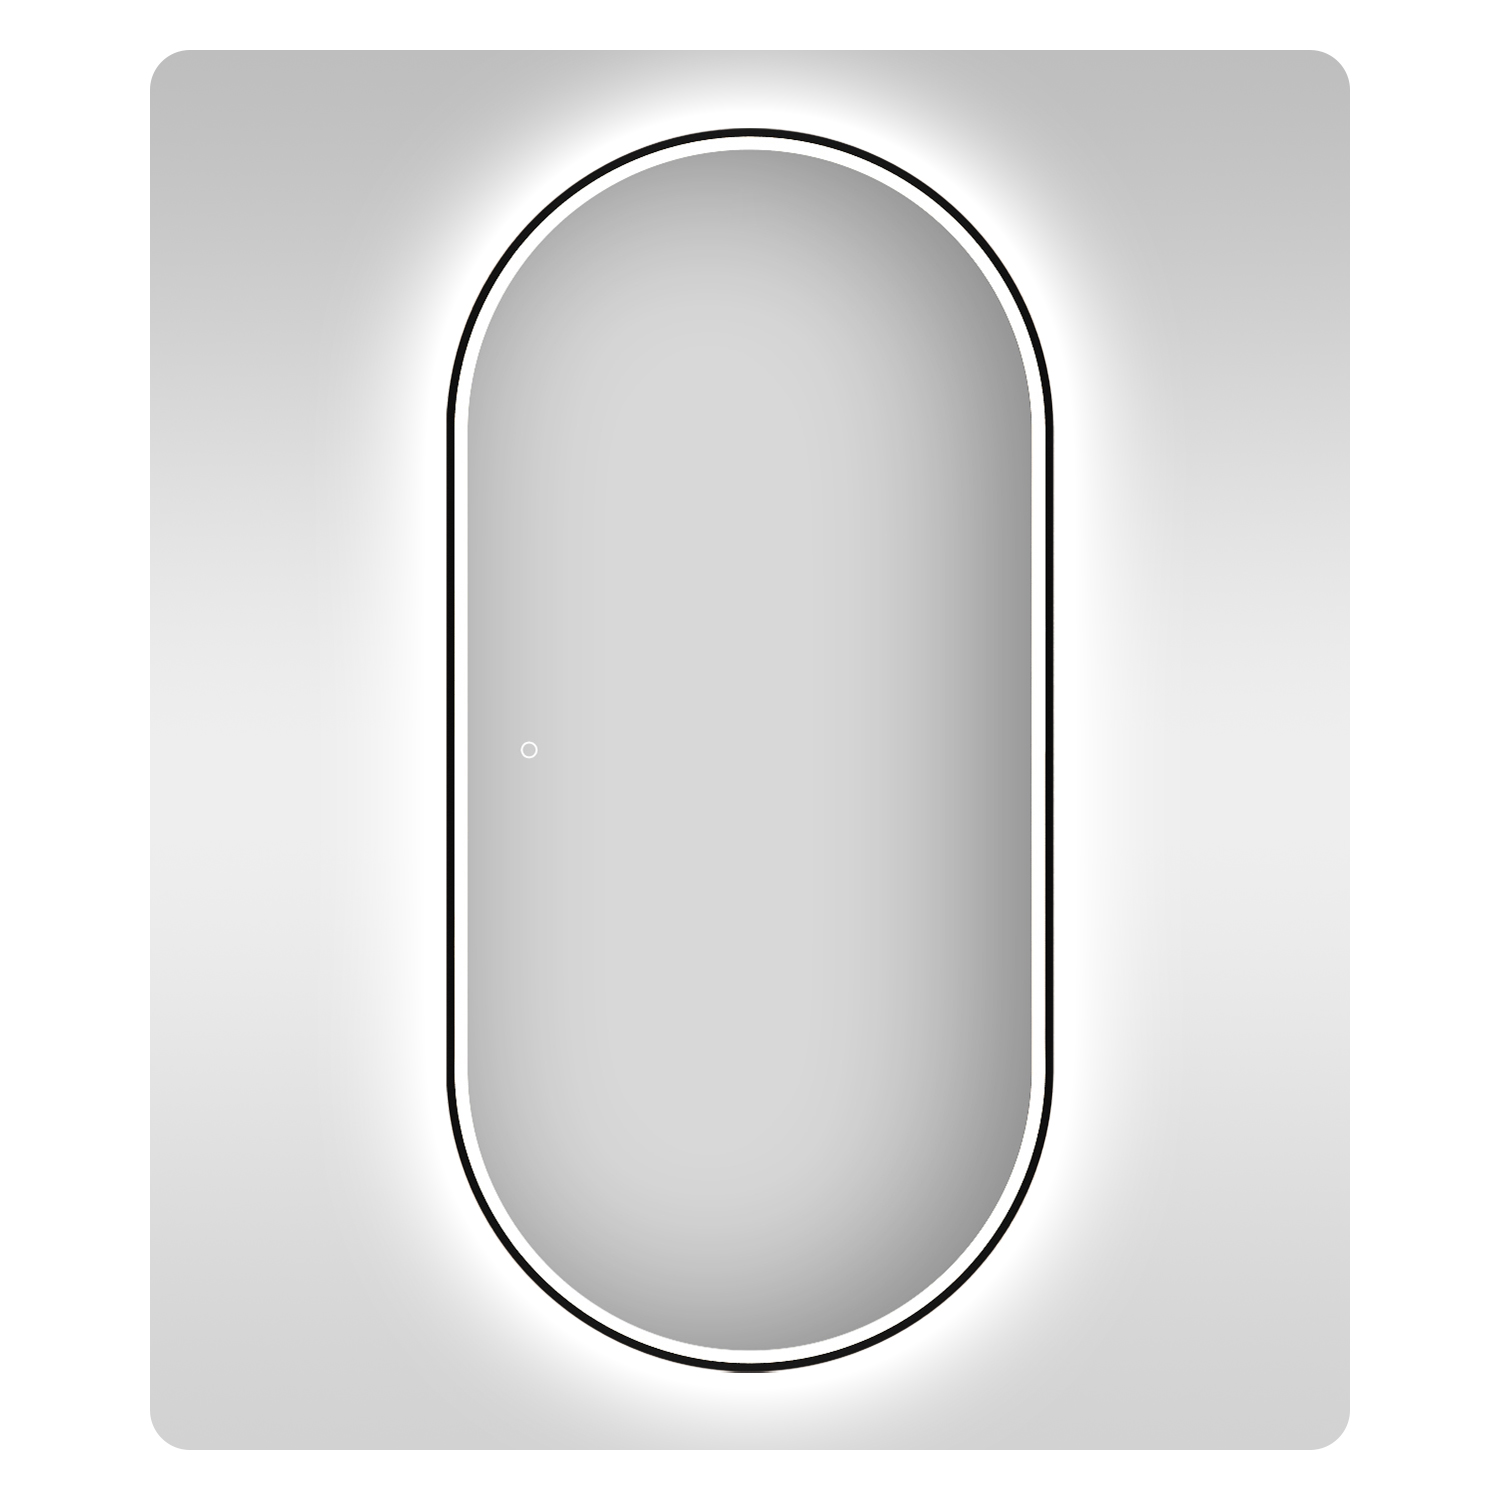 Влагостойкое зеркало с подсветкой для ванной Wellsee 7 Rays' Spectrum 172201640, 60х120 см